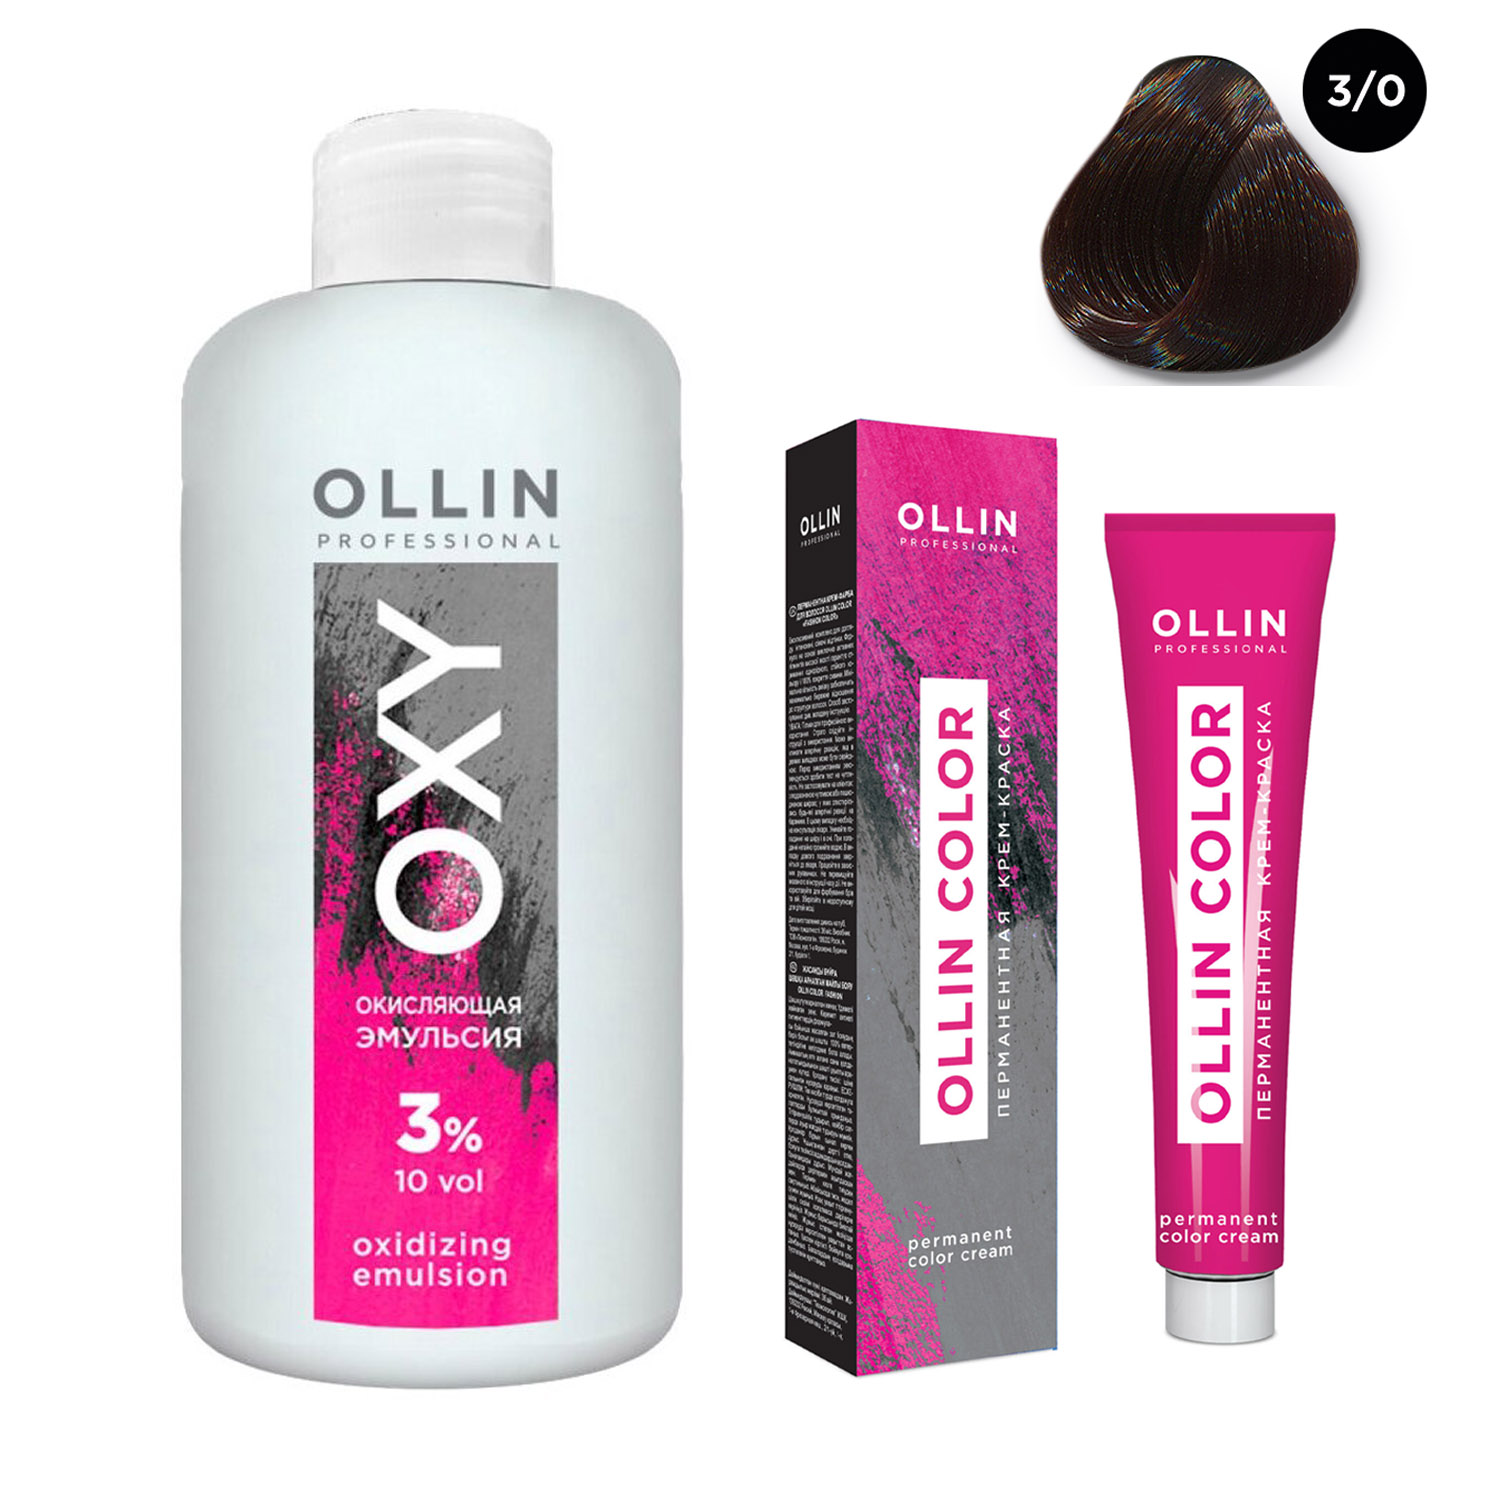 Купить Ollin Professional Набор Перманентная крем-краска для волос Ollin Color оттенок 3/0 темный шатен 100 мл + Окисляющая эмульсия Oxy 3% 150 мл (Ollin Professional, Ollin Color), Россия